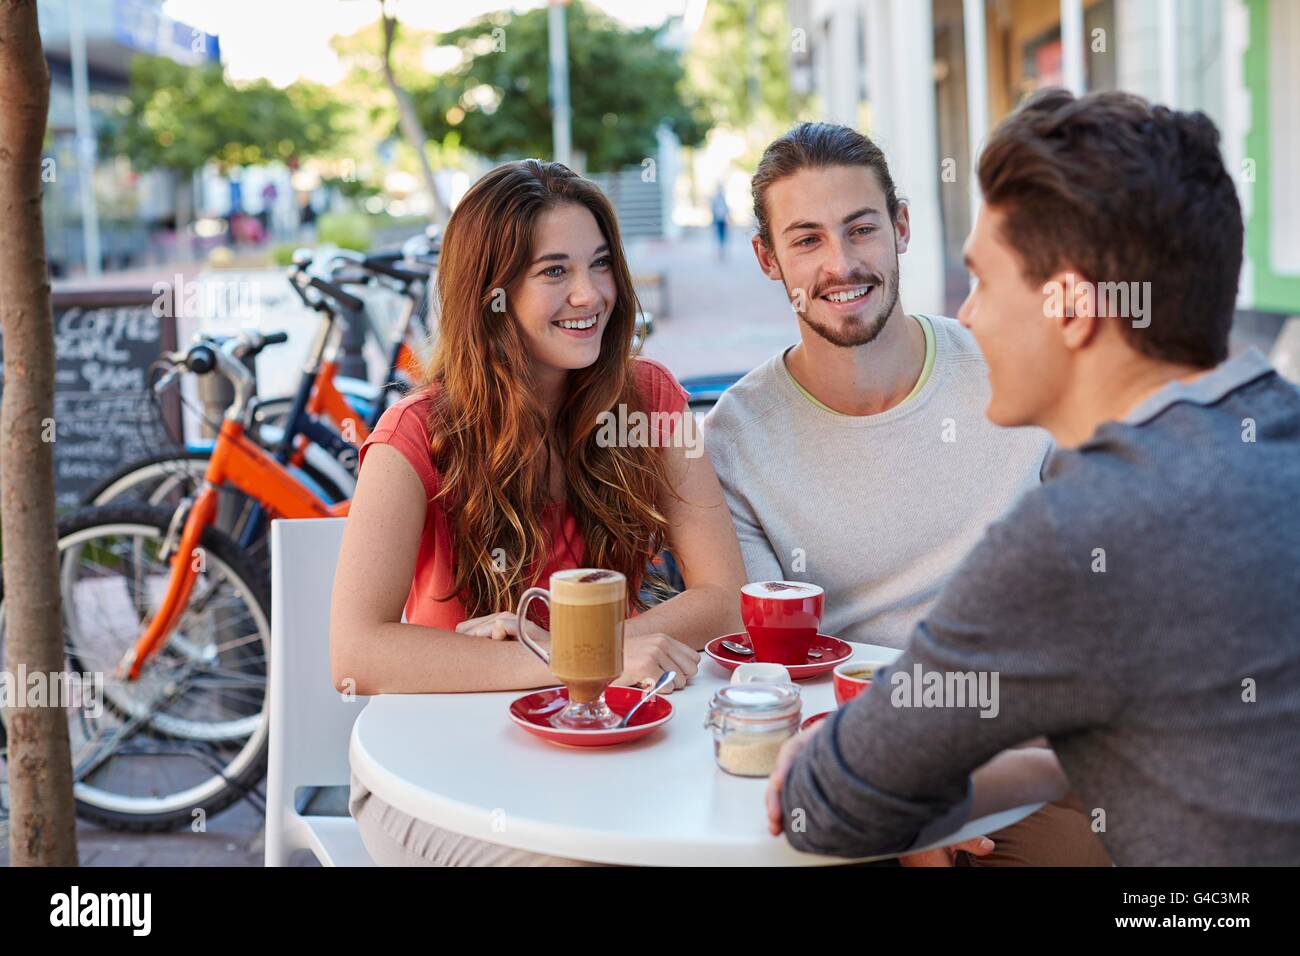 -MODELL VERÖFFENTLICHT. Drei jungen Freunden im Café mit heißen Getränken, lächelnd. Stockfoto